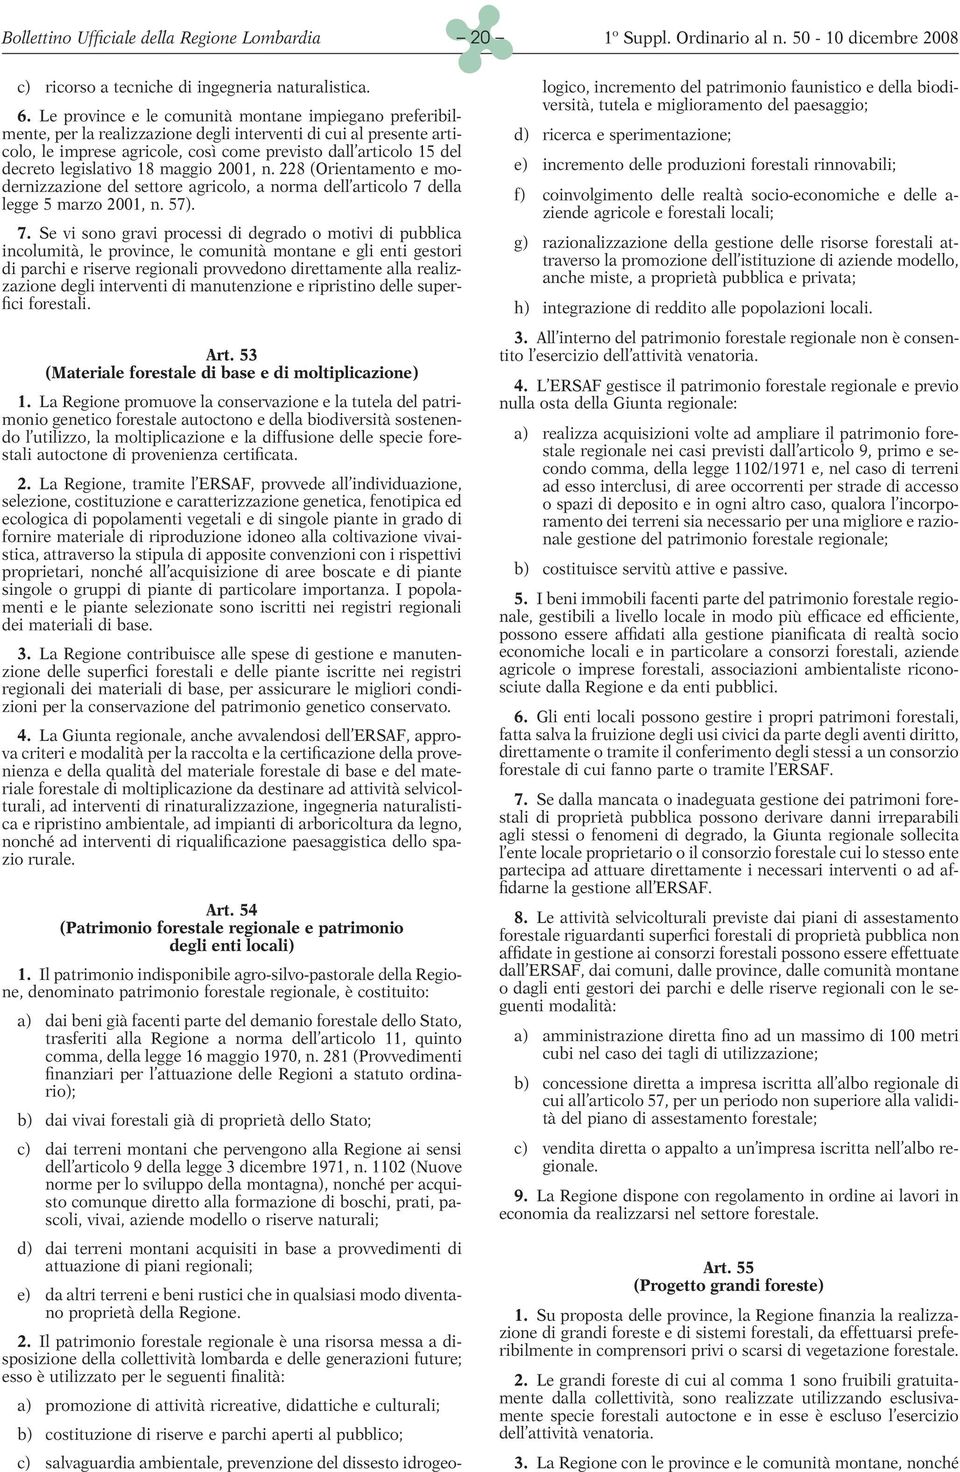 legislativo 18 maggio 2001, n. 228 (Orientamento e modernizzazione del settore agricolo, a norma dell articolo 7 